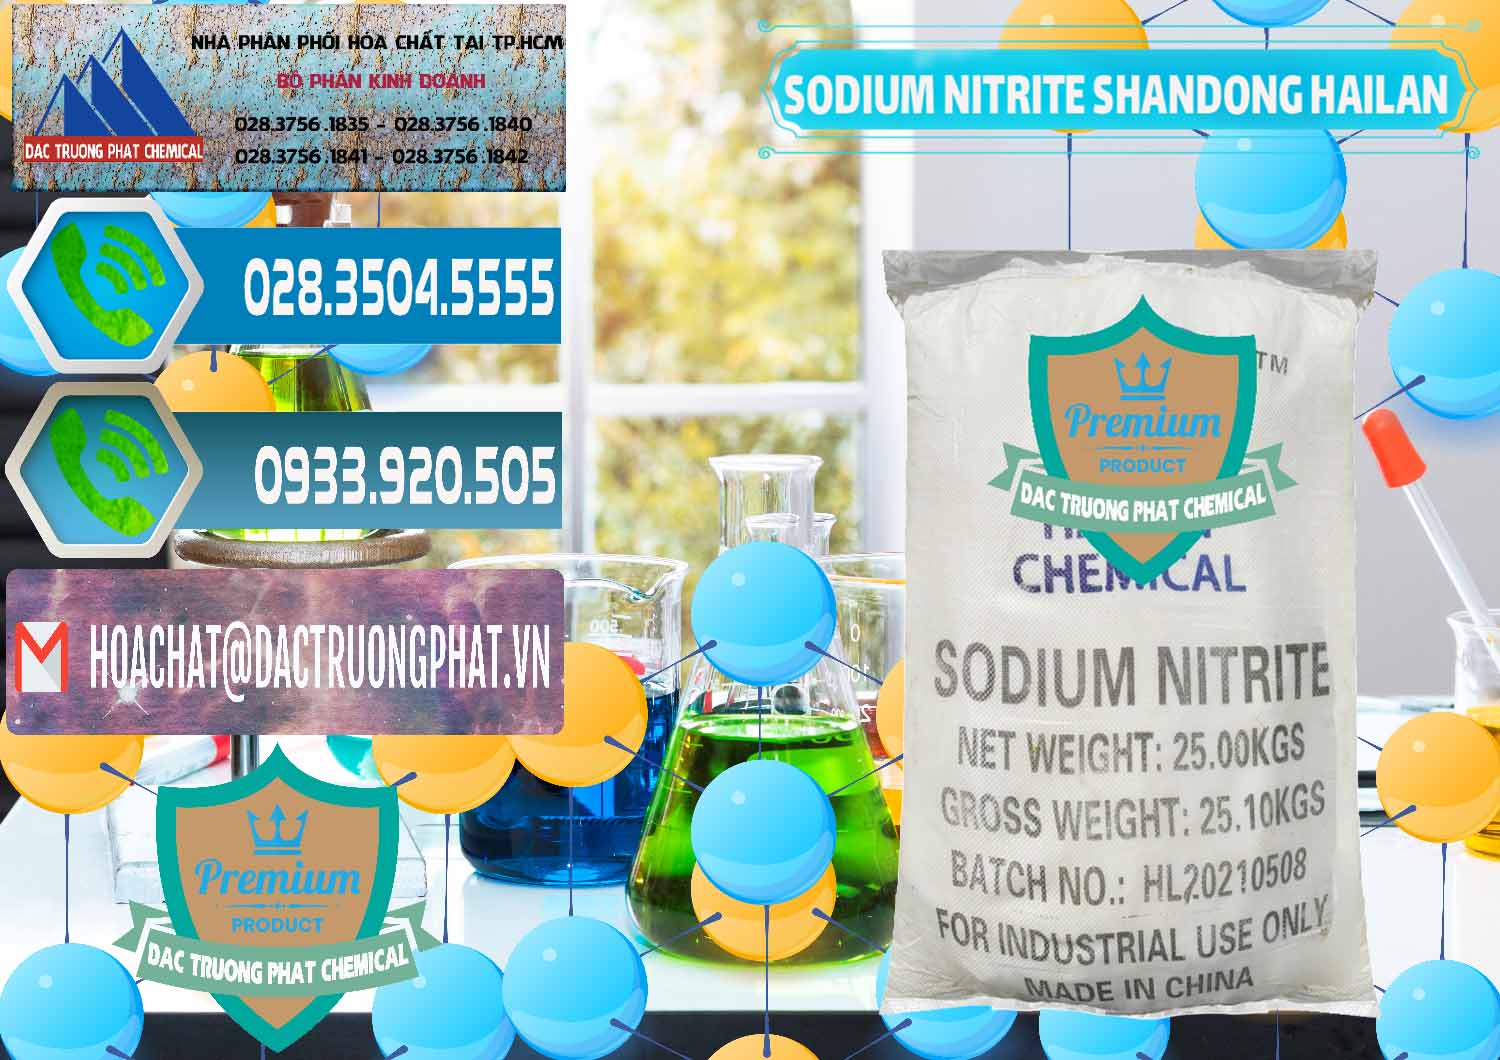 Cty nhập khẩu ( bán ) Sodium Nitrite - NANO2 99.3% Shandong Hailan Trung Quốc China - 0284 - Công ty phân phối ( cung ứng ) hóa chất tại TP.HCM - congtyhoachat.net